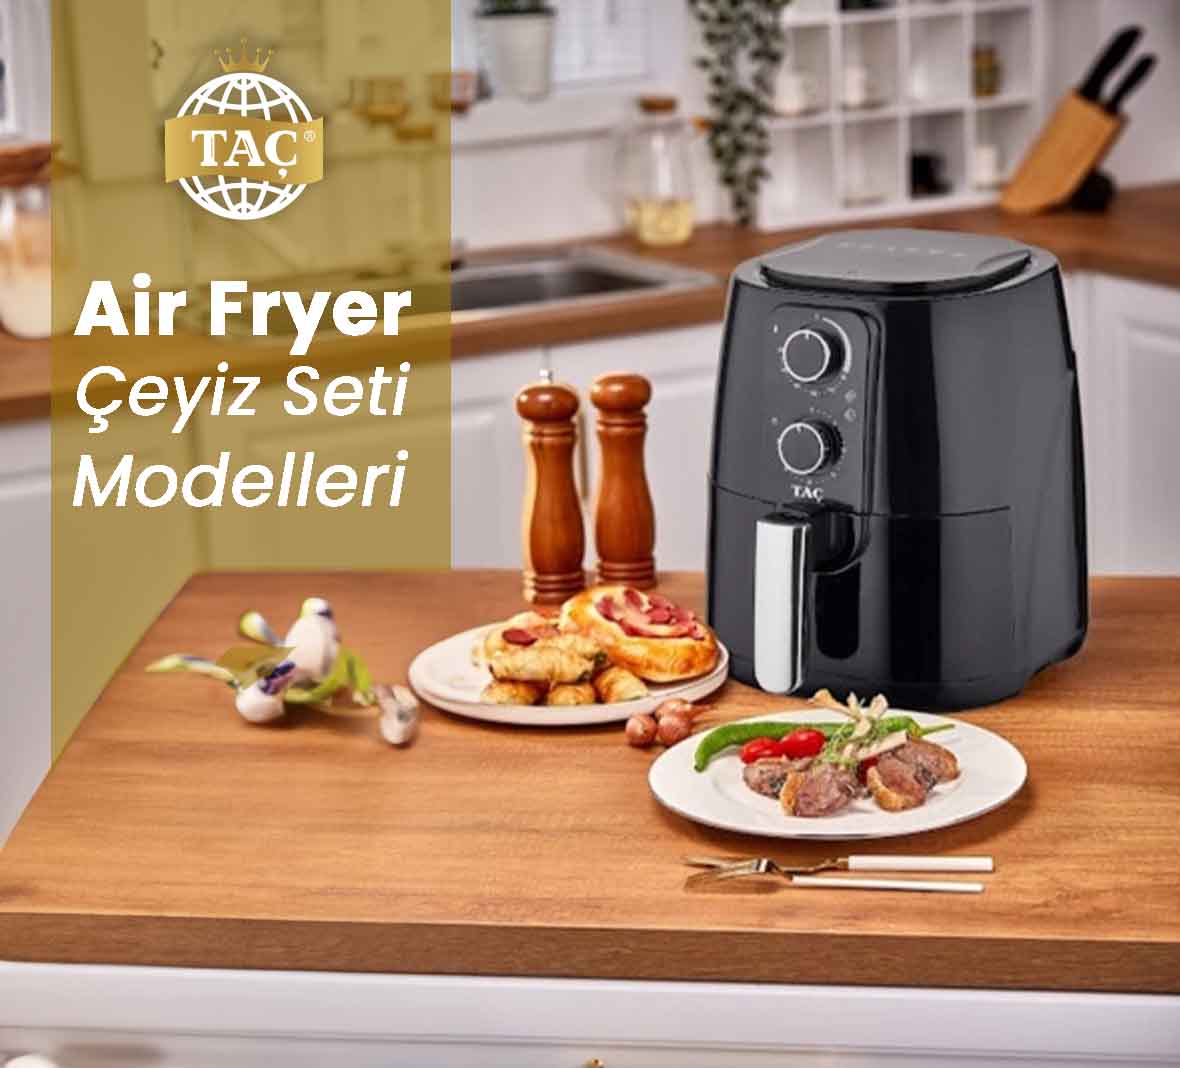 Air Fryer Çeyiz Seti Modelleri Fiyatı Fiyatları Çeşitleri hakkında detaylı bilgi için ilgili sayfayı ziyaret ediniz. - Tacev.com